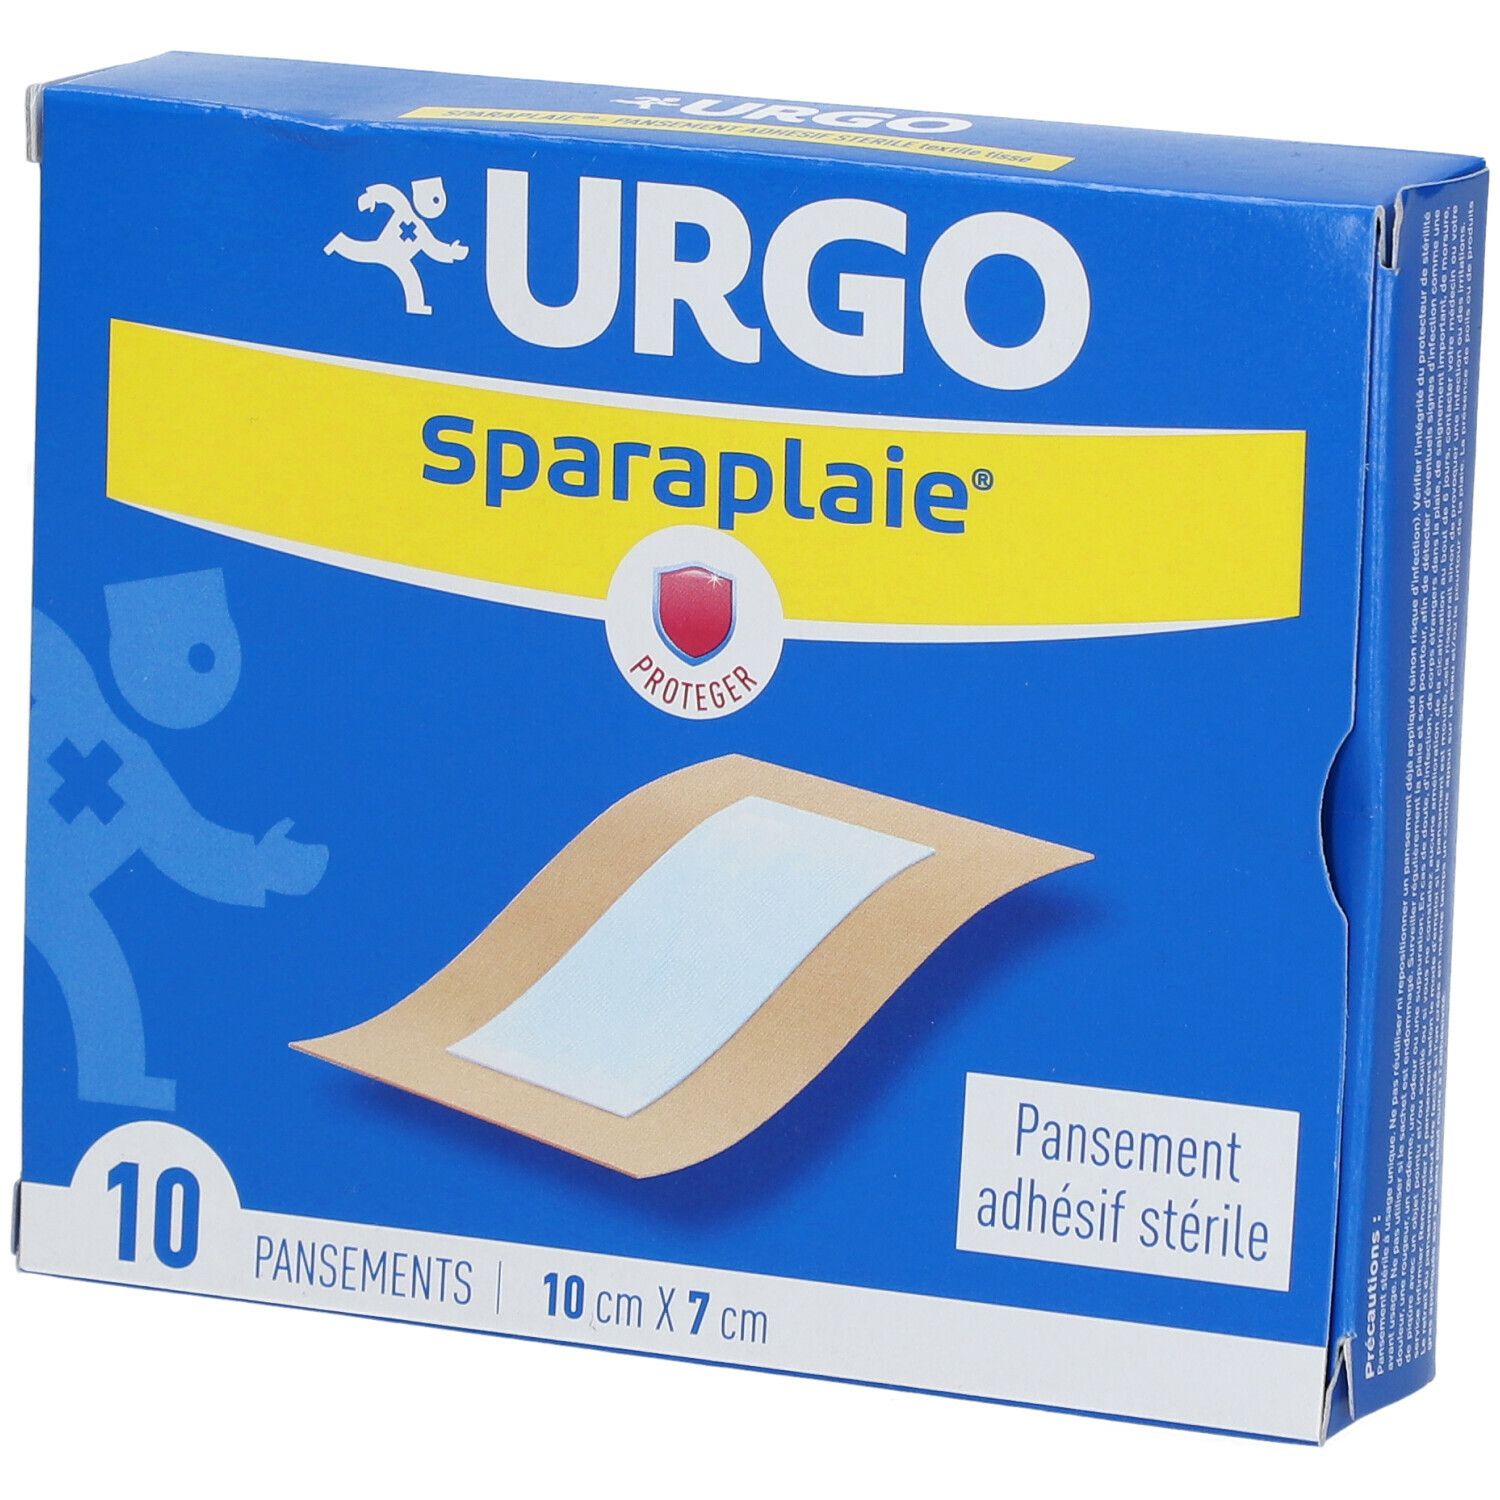 Urgo Sparaplaie® Pansement adhésif stérile 10 cm x 7 cm